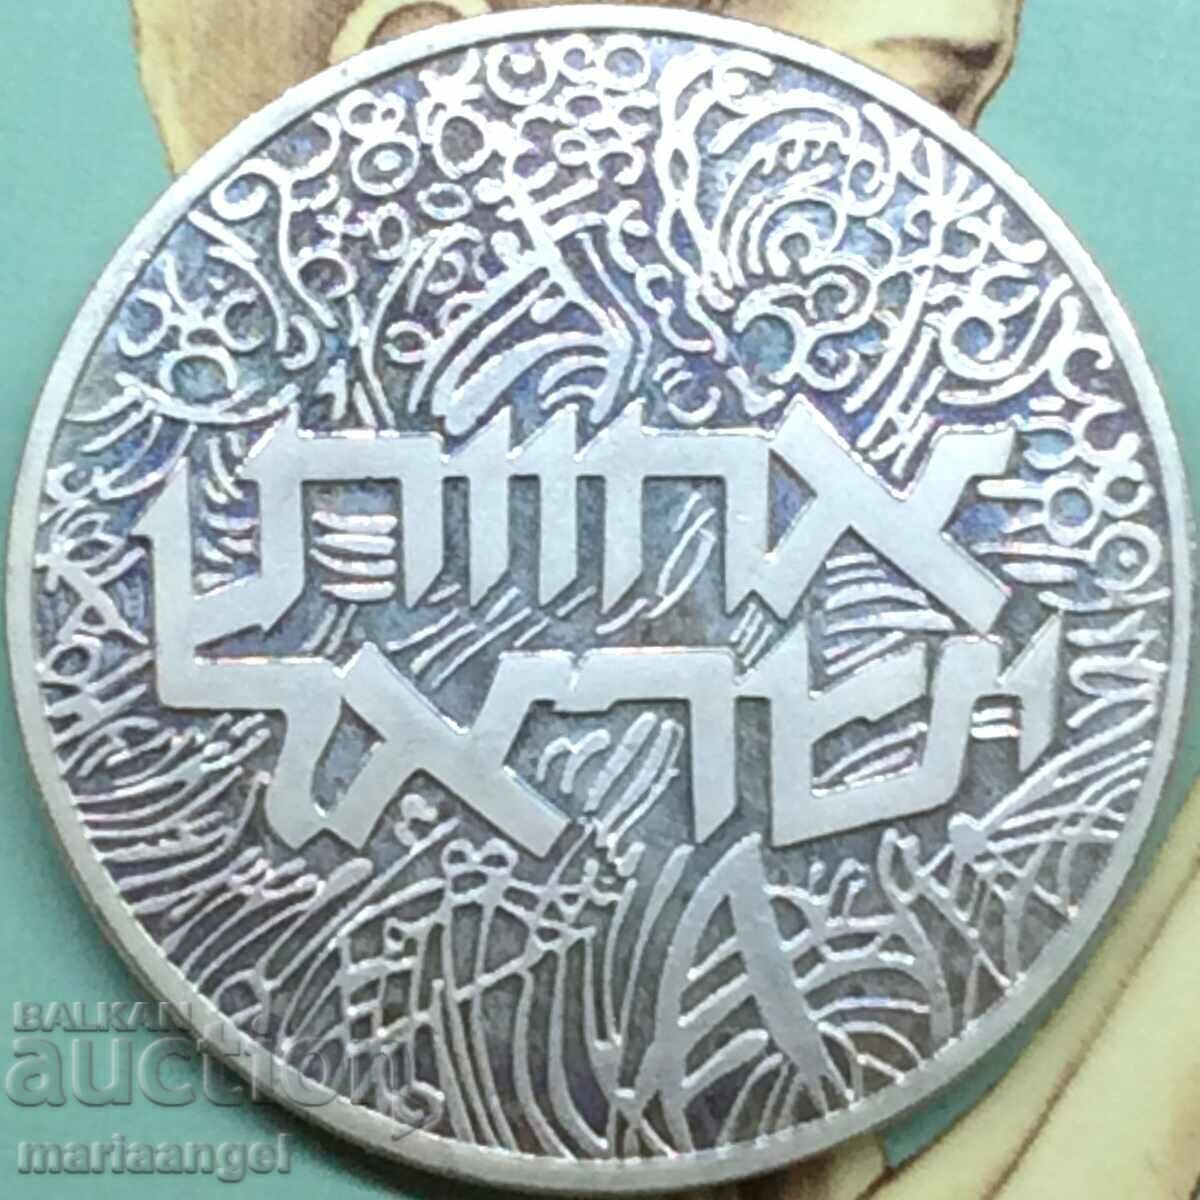 Israel 2 shekels 1984 mint Munich 10011 pcs. PROOF UNC